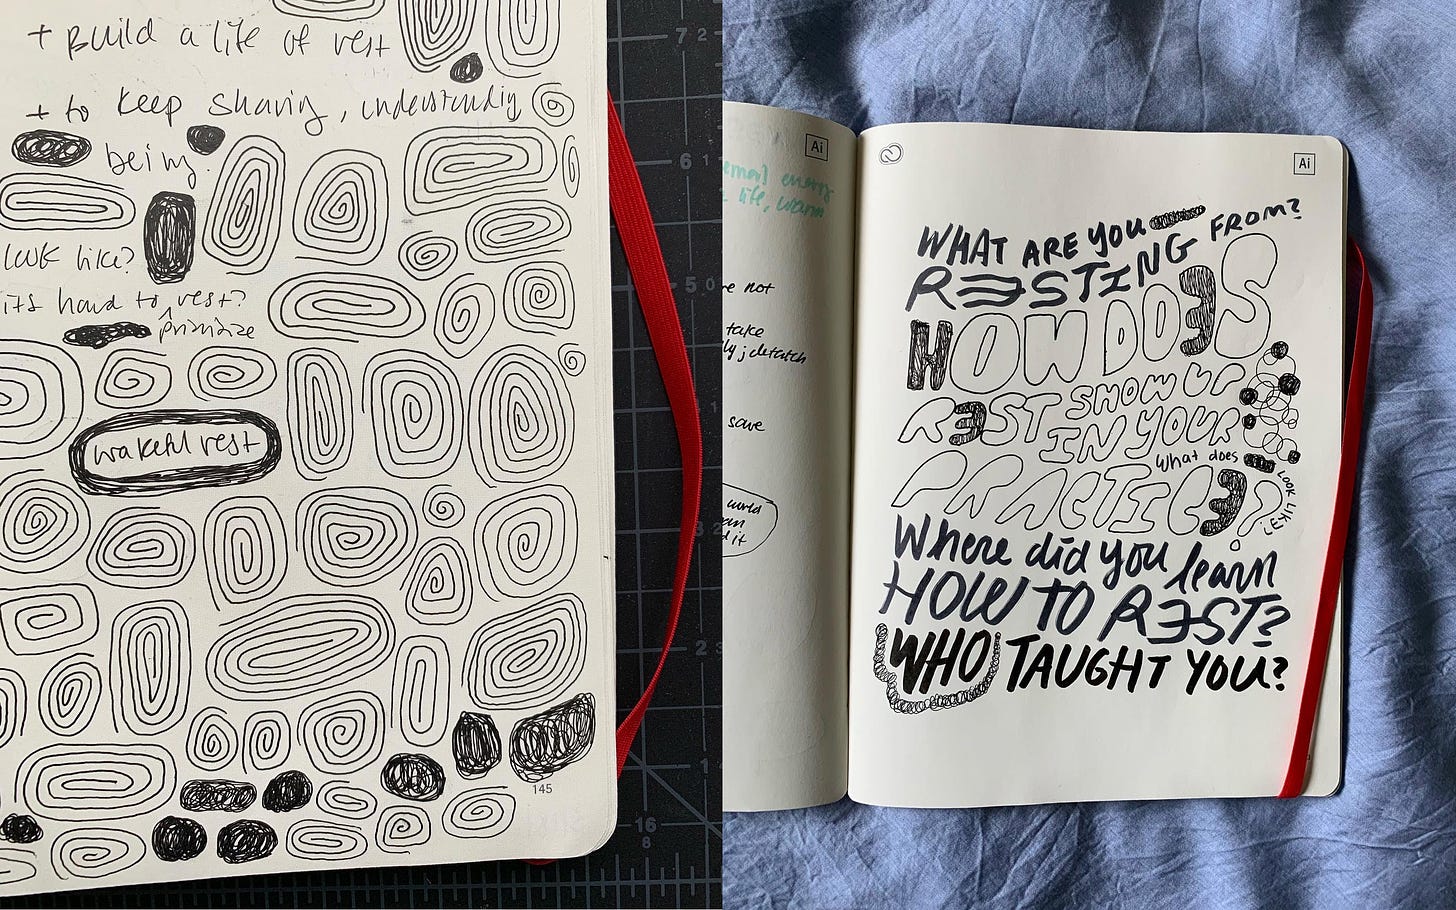 Bianca's doodles from her conversations in her sketchbook